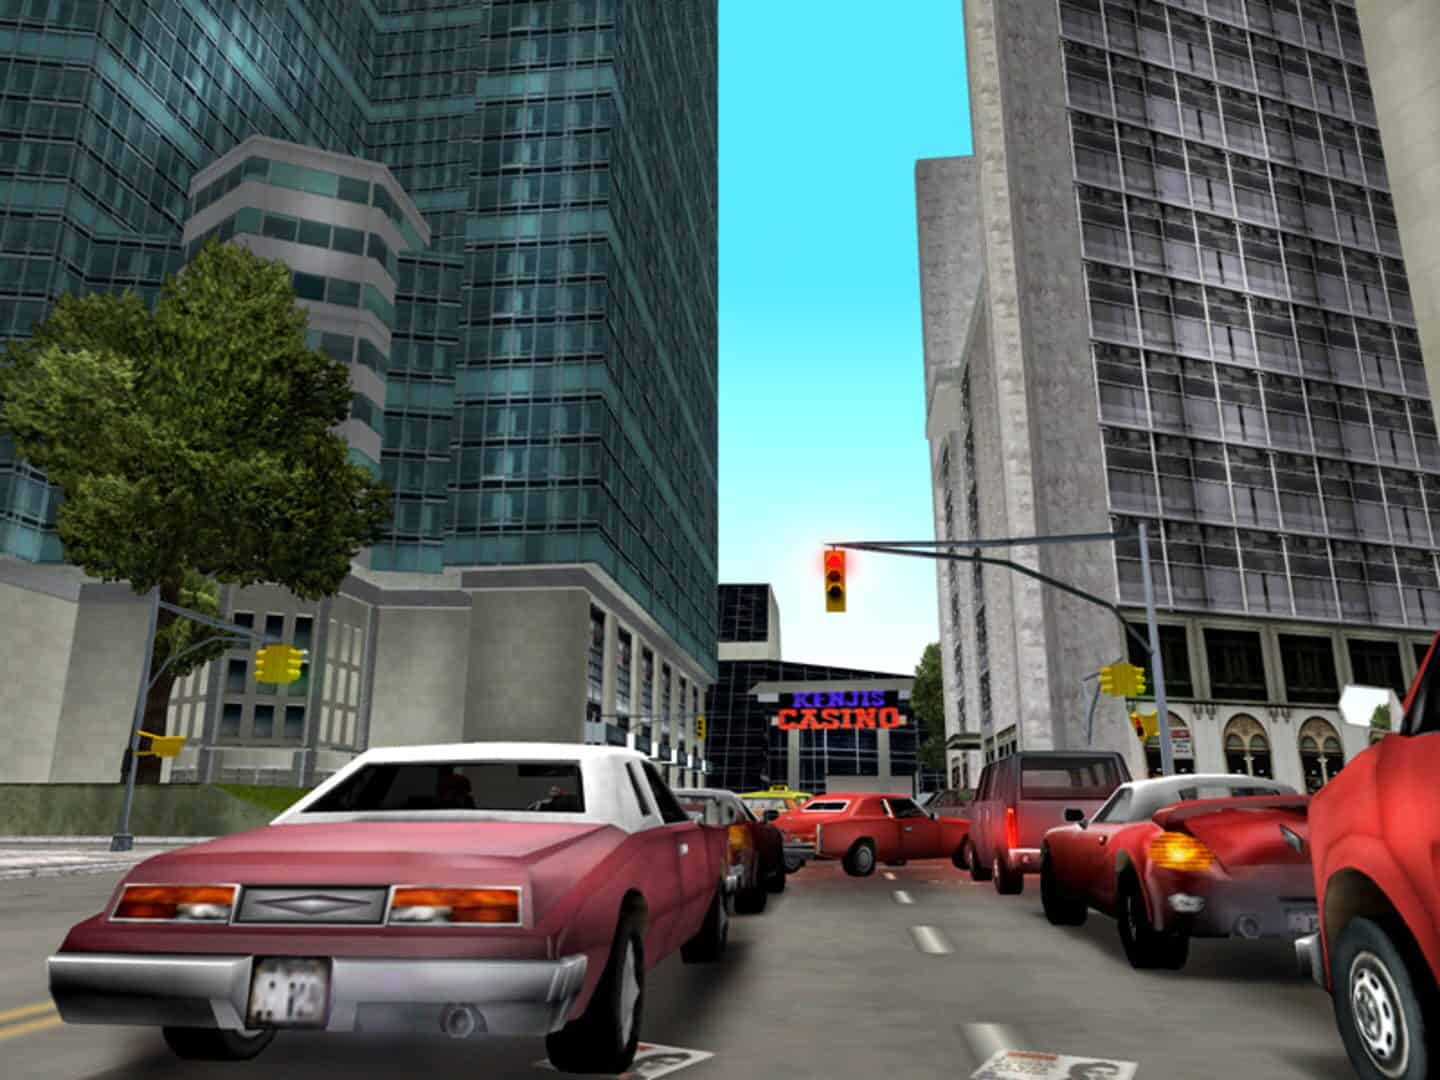 GTA3 Era city size comparison : r/GTA